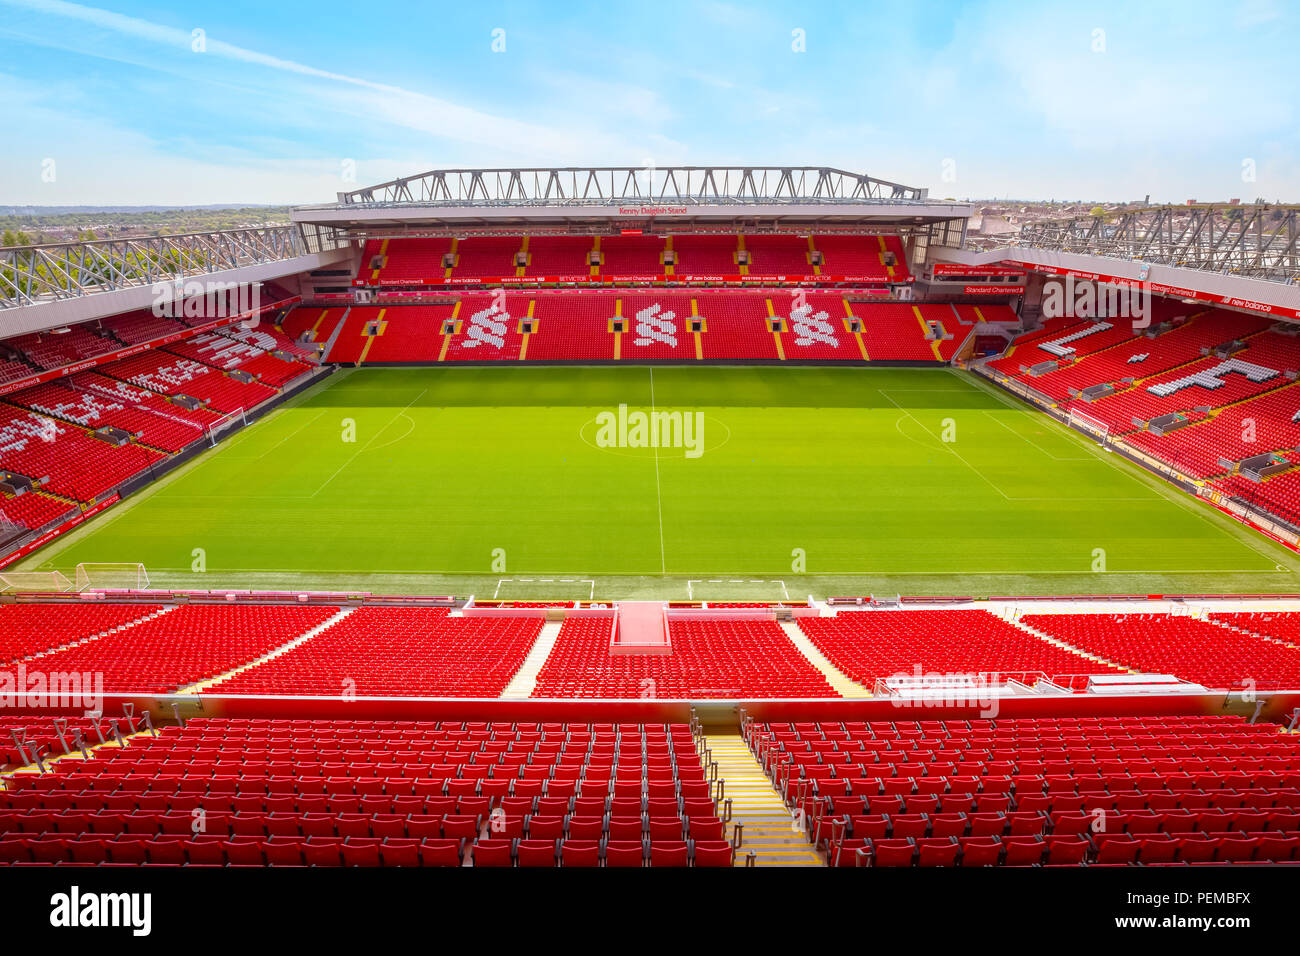 Liverpool Grossbritannien 17 Mai 2018 Anfield Stadion Die Heimstatte Des Fc Liverpool Hat Eine Kapazitat Von 54 074 Die Sechste L Stockfotografie Alamy